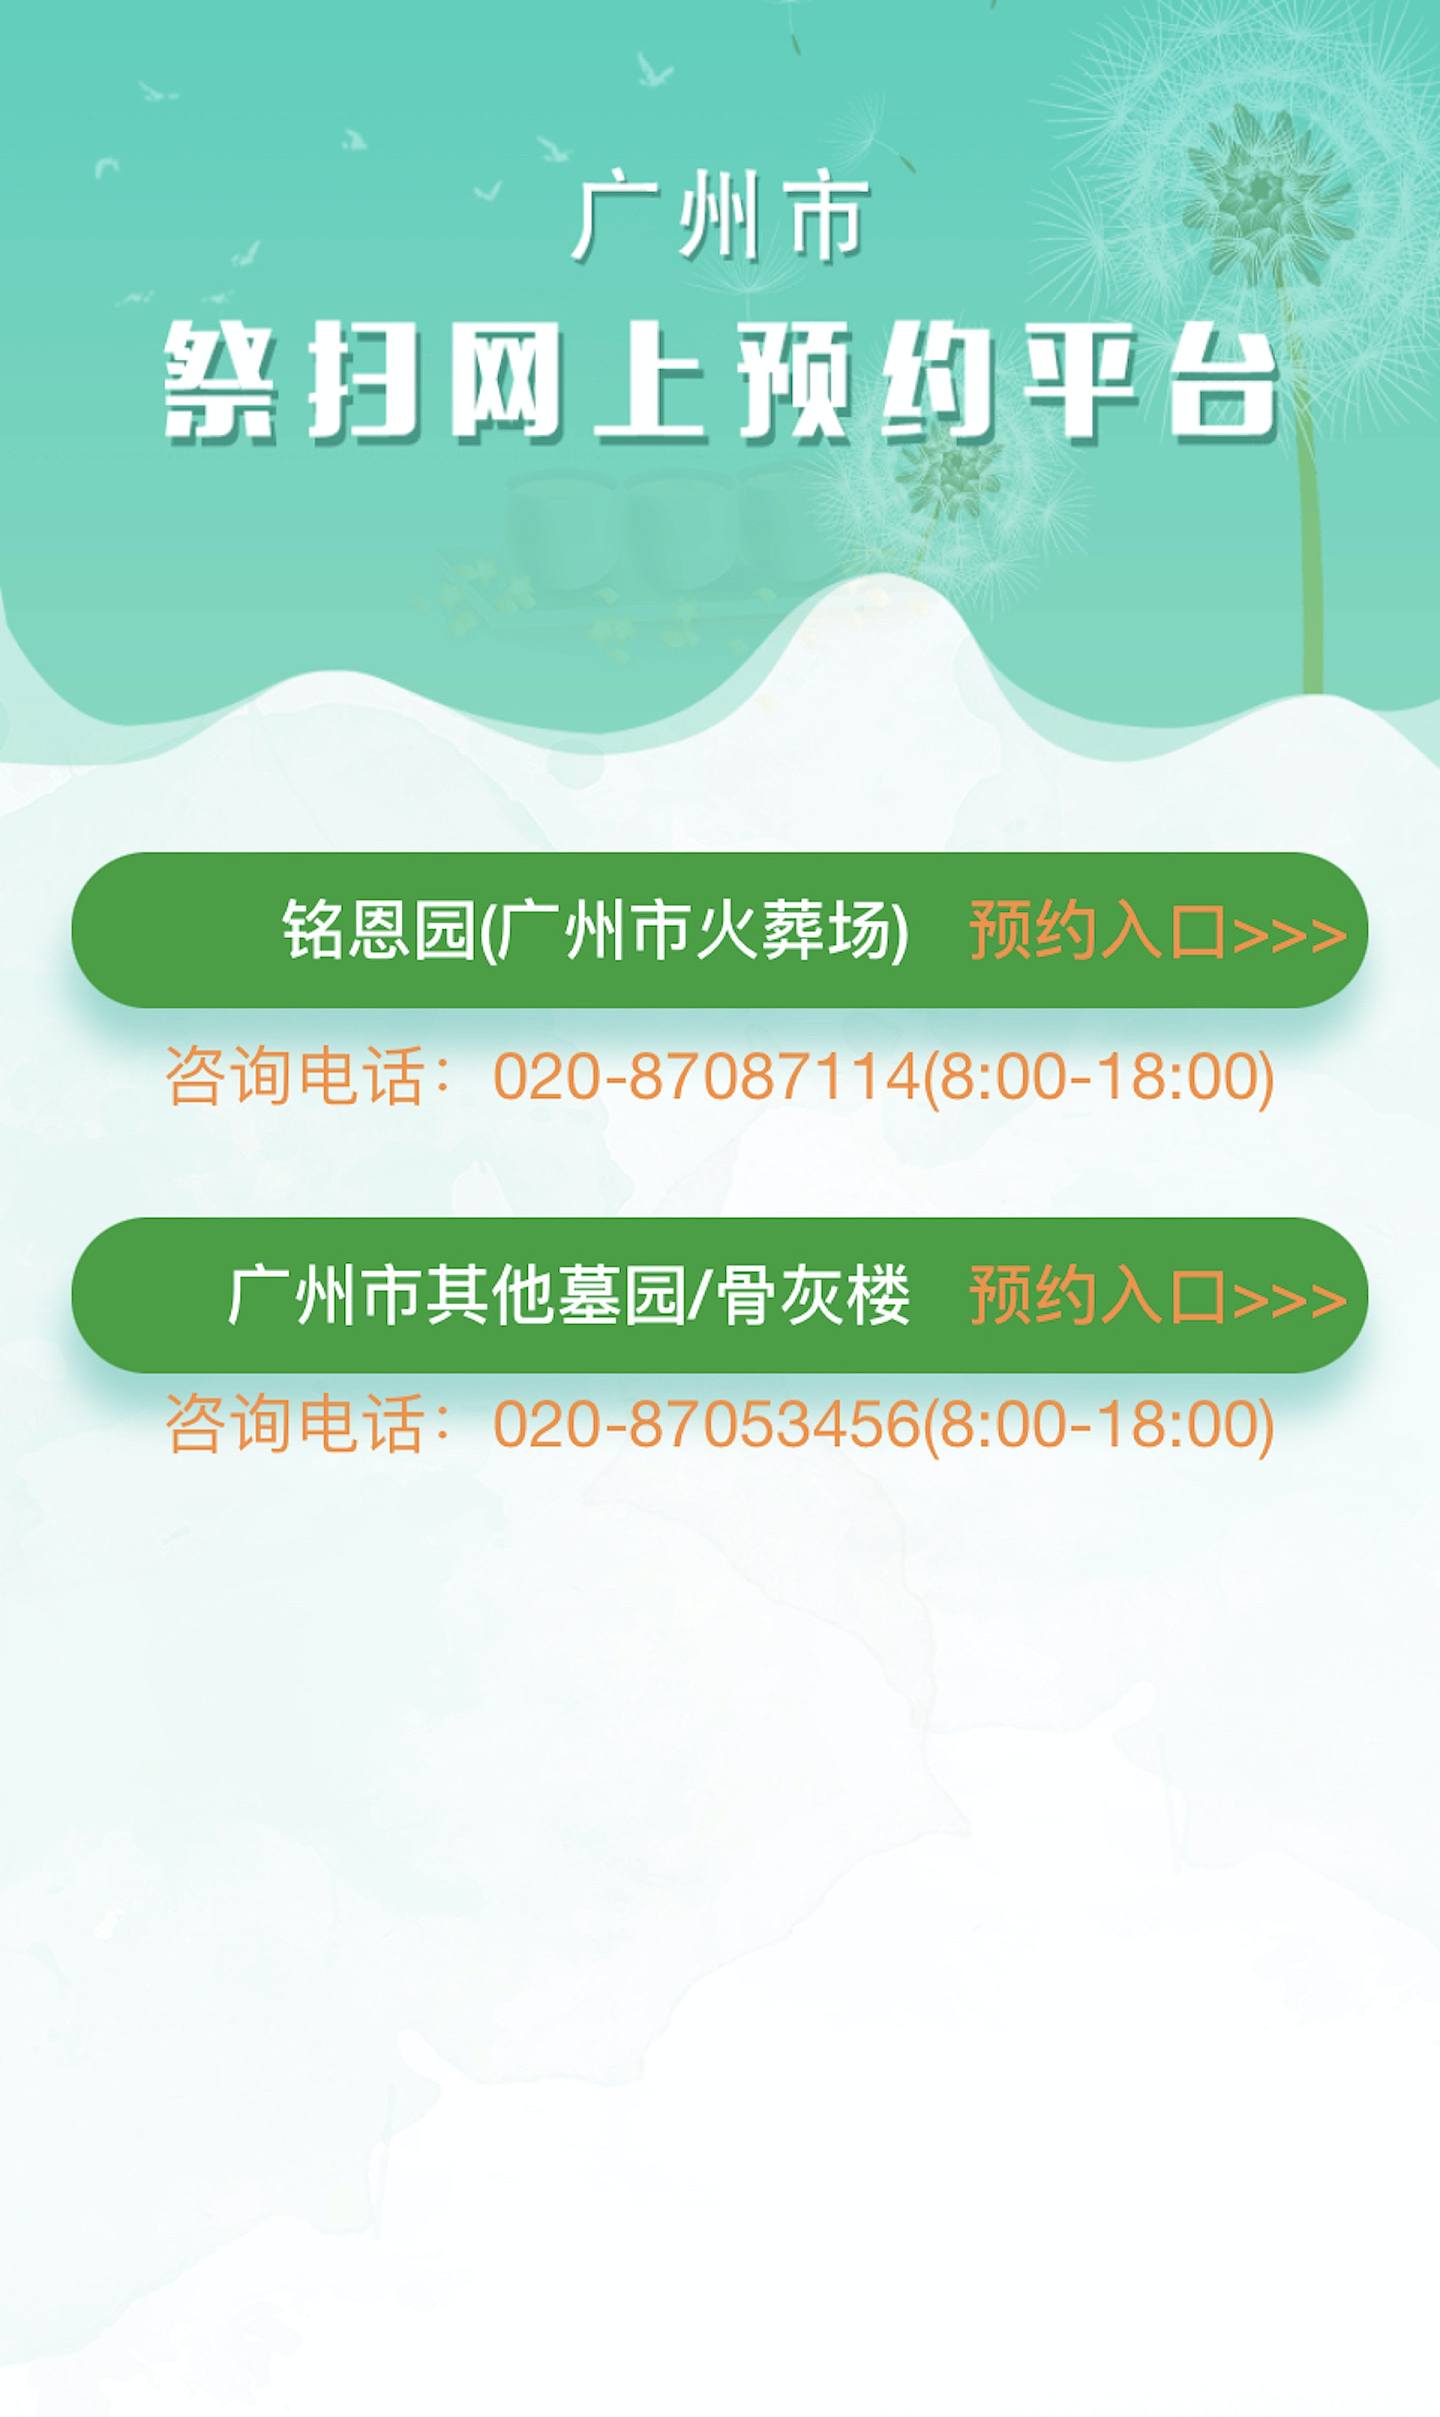 广州市清明节祭扫须通过网上系统预约。 (广州市祭扫网上预约平台)